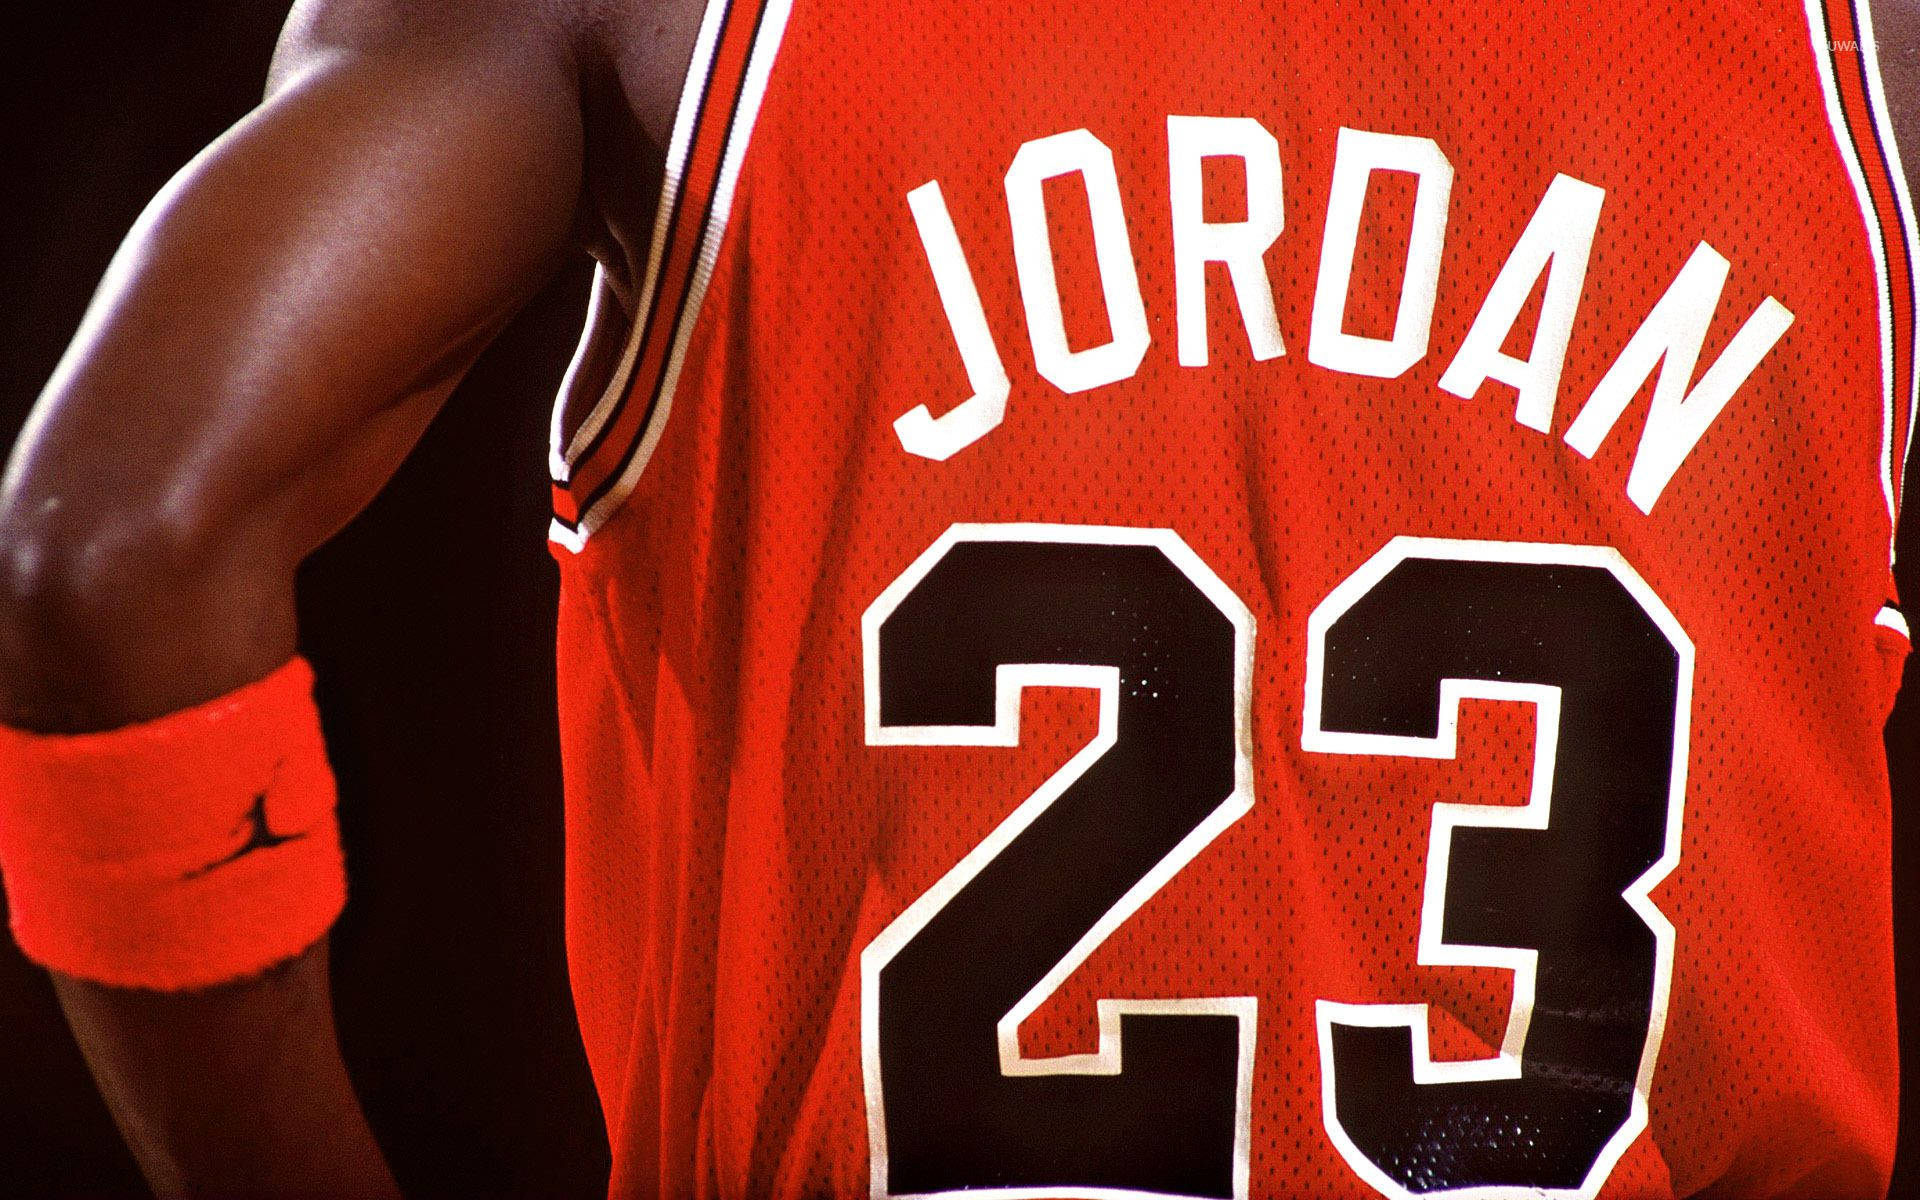 Download Michael Jordan in His Classic Bull's Jersey Wallpaper